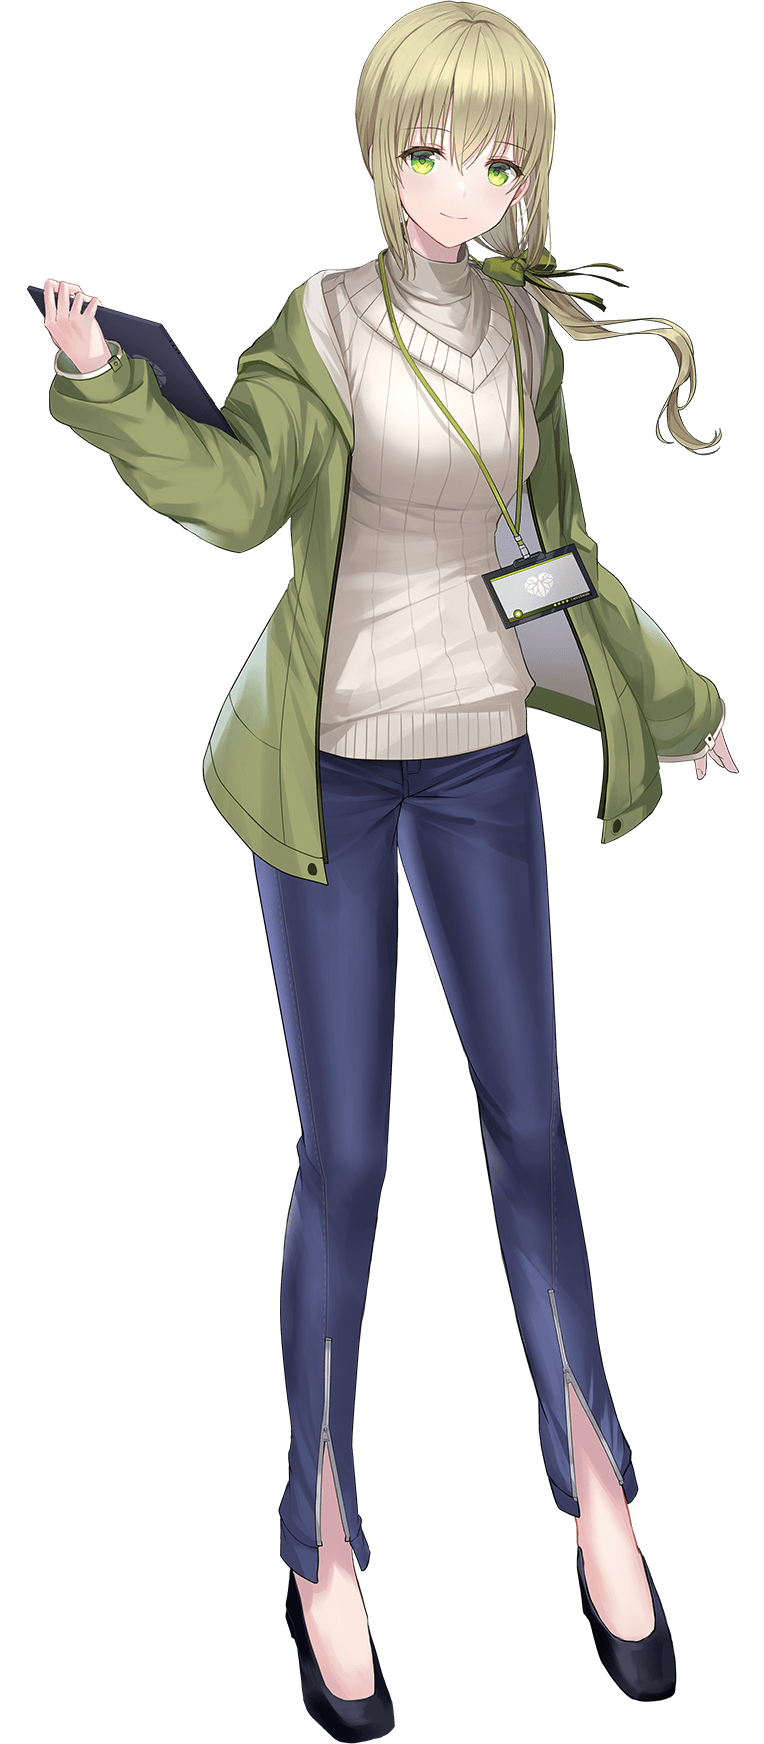 「葵茶々」は霧島レイ、富士サクラとともに羽衣6のメンバー。ユピテル静岡研究所に勤務する、ユピテルオリジナルキャラクター。